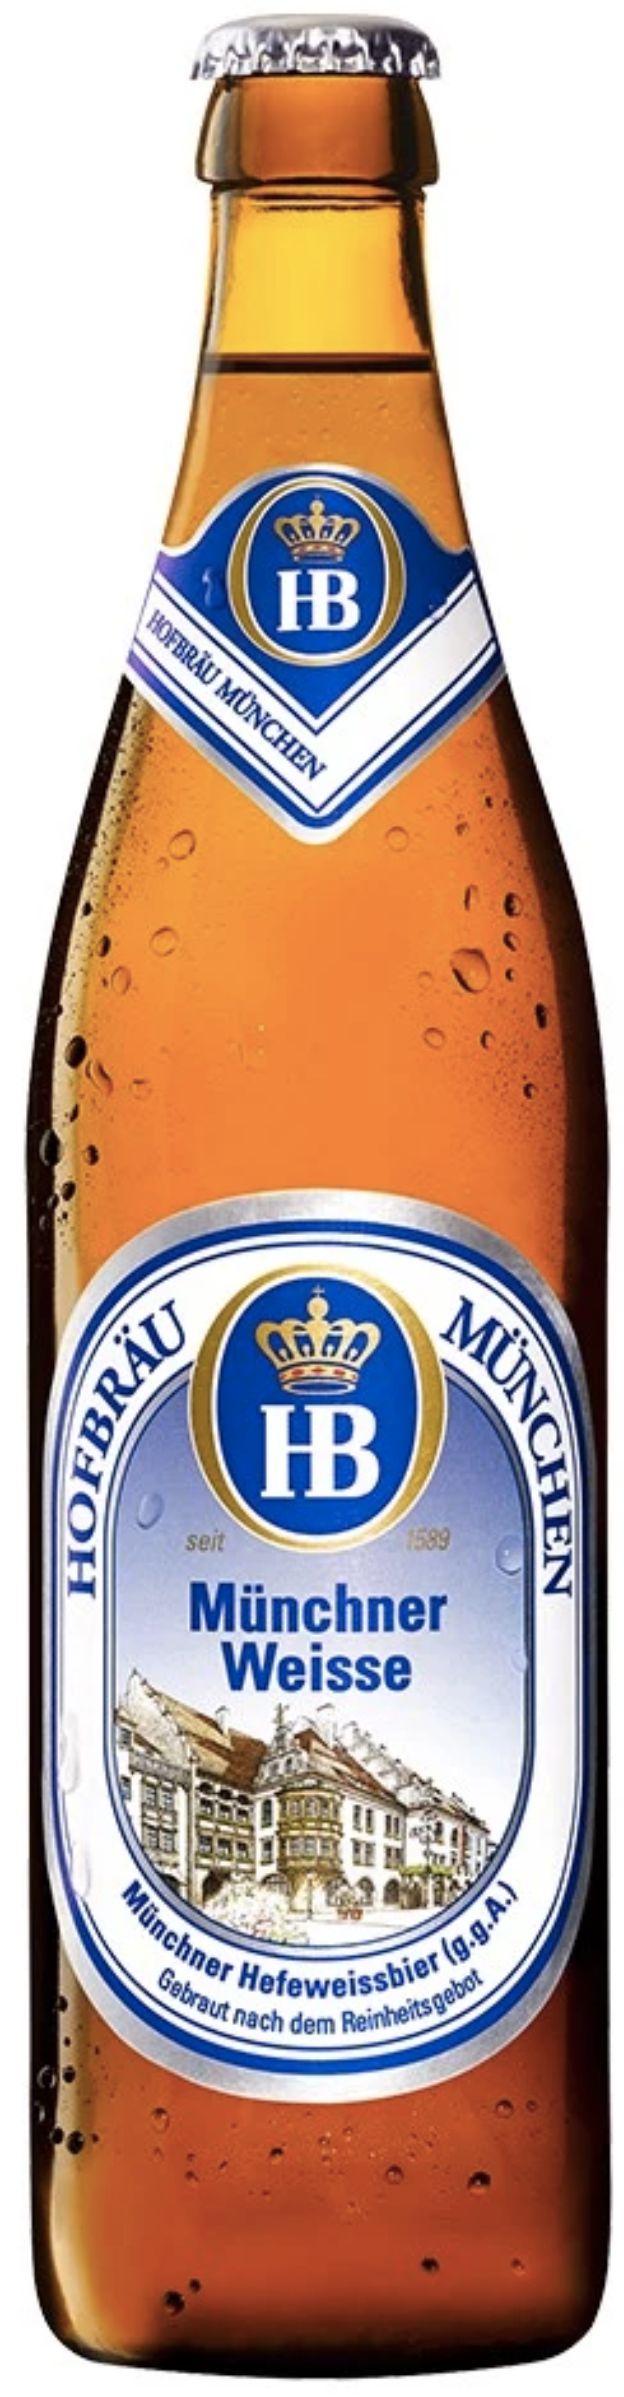 Пиво Хофброй Мюнхен Вайс, светлое пшеничное, 0.5 л бут